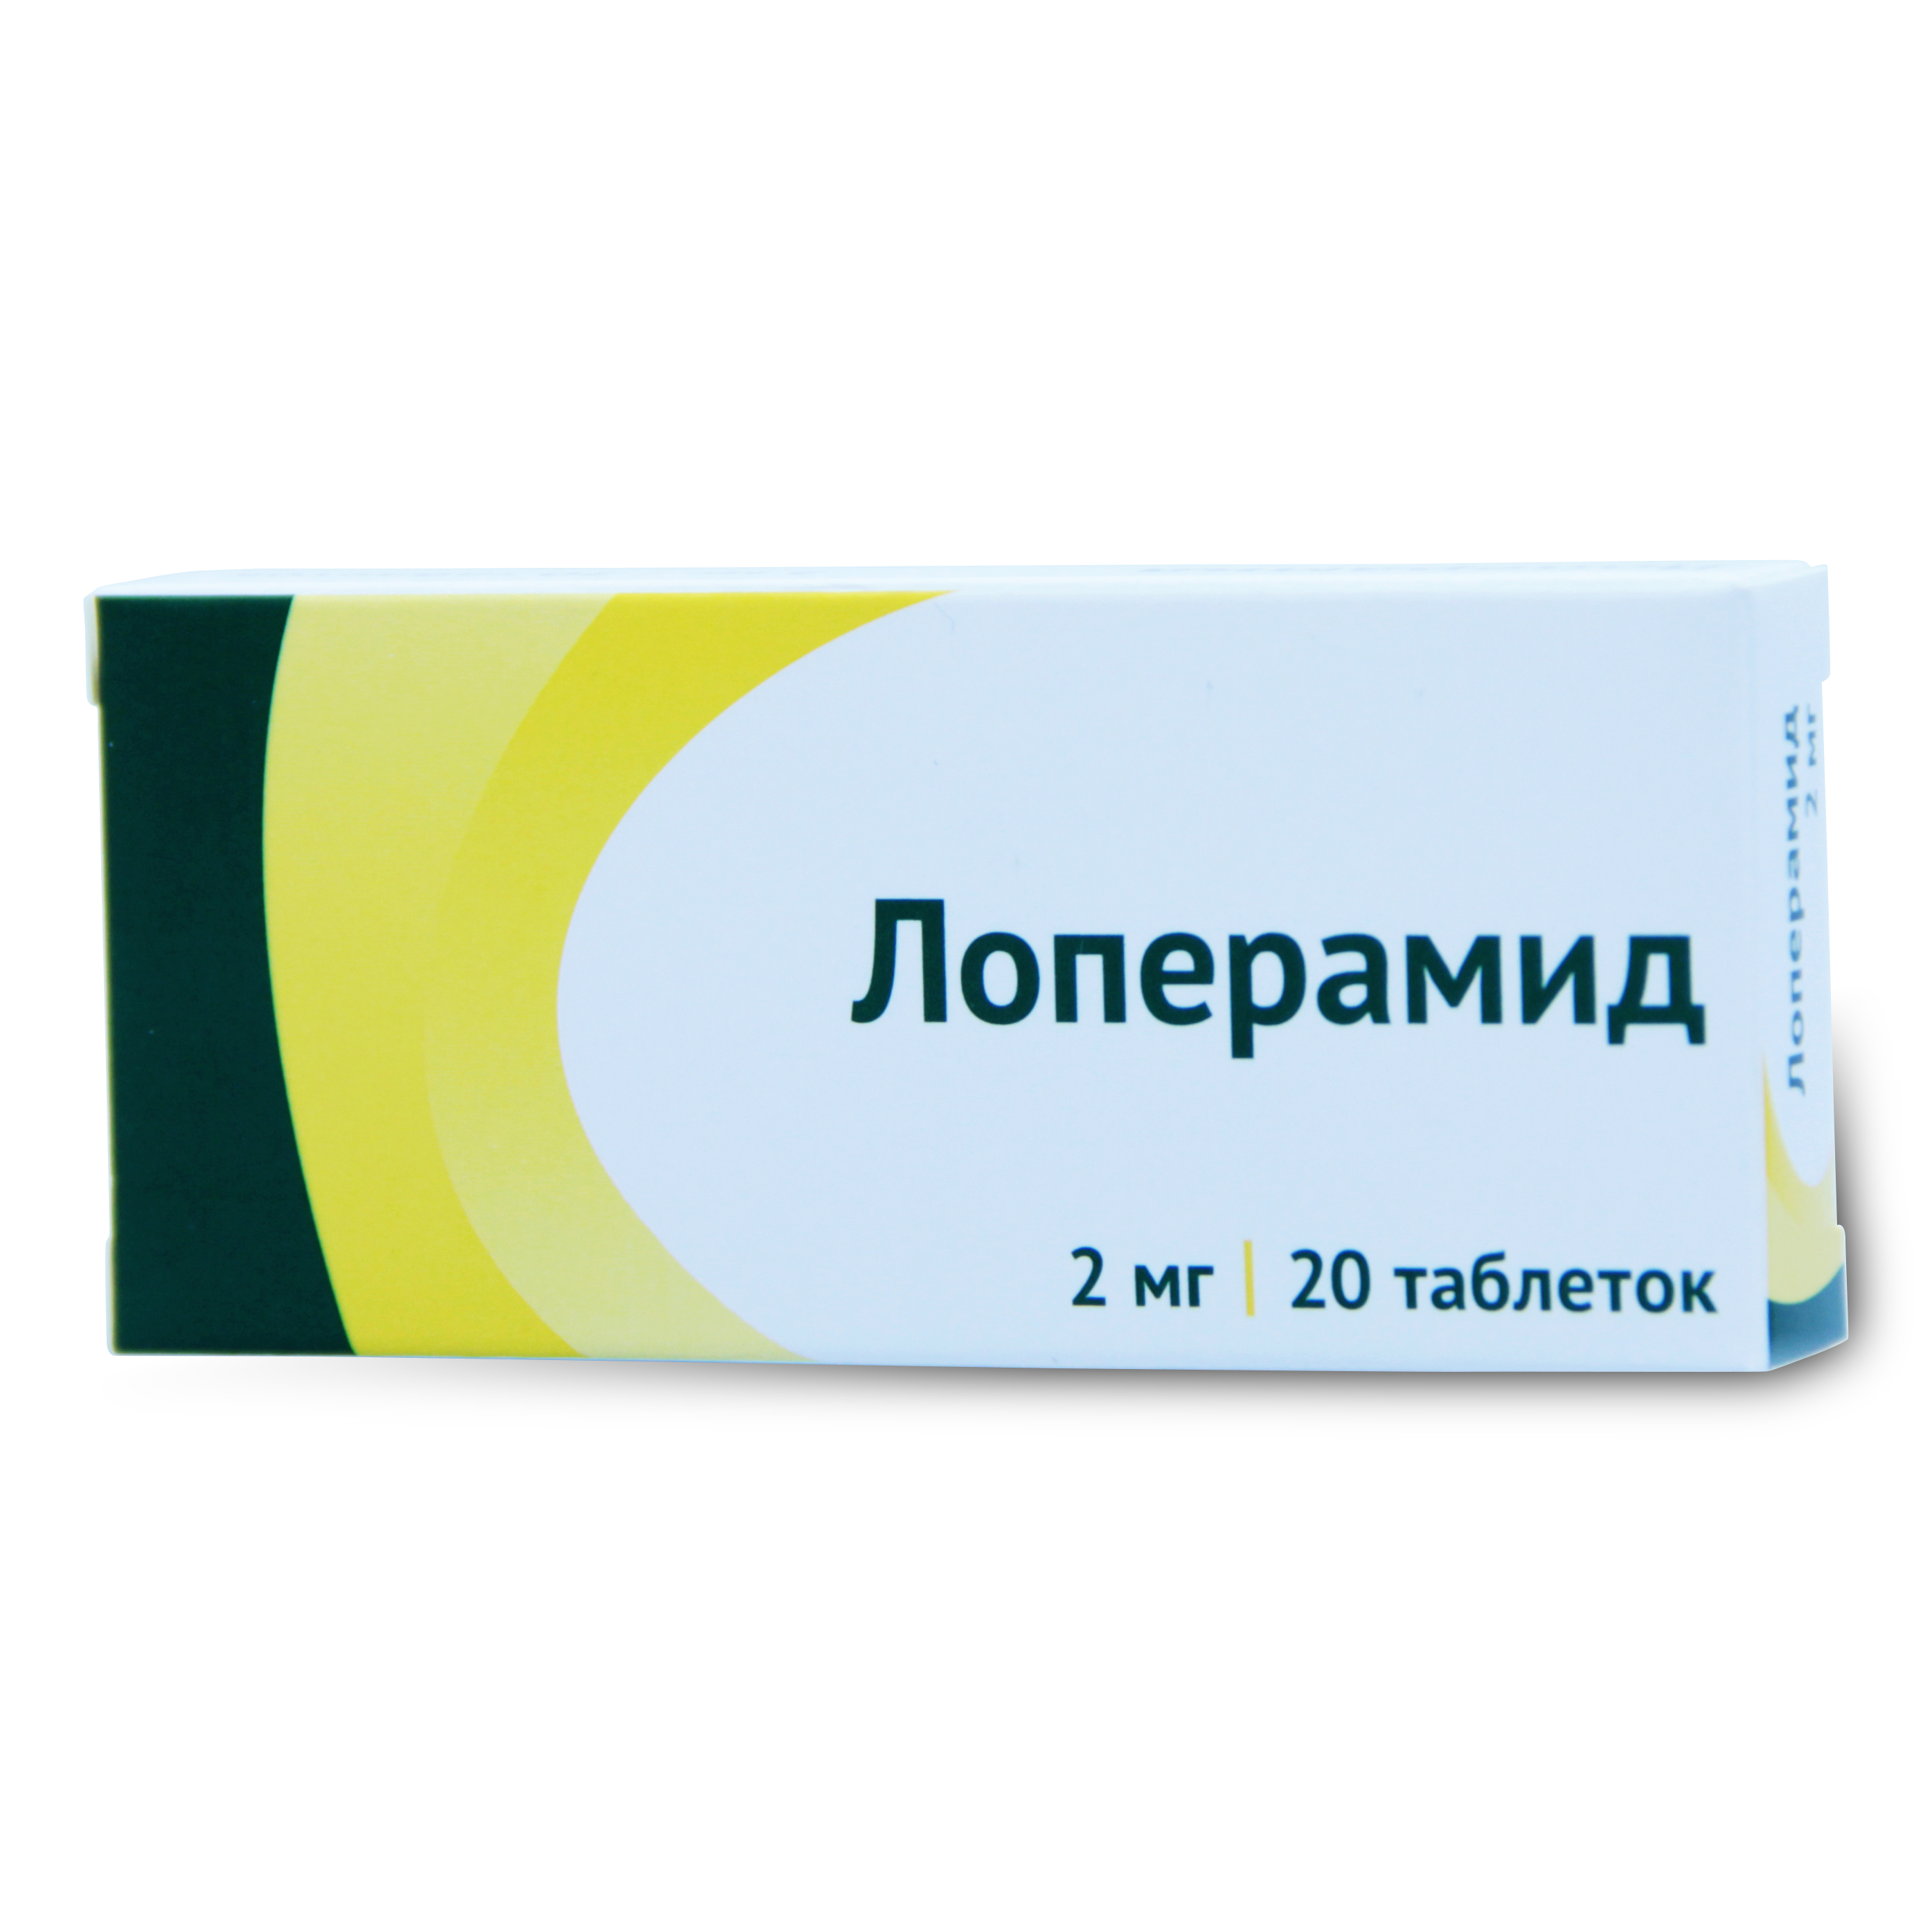 Купить Лоперамид таблетки 2 мг 20 шт., Озон ООО